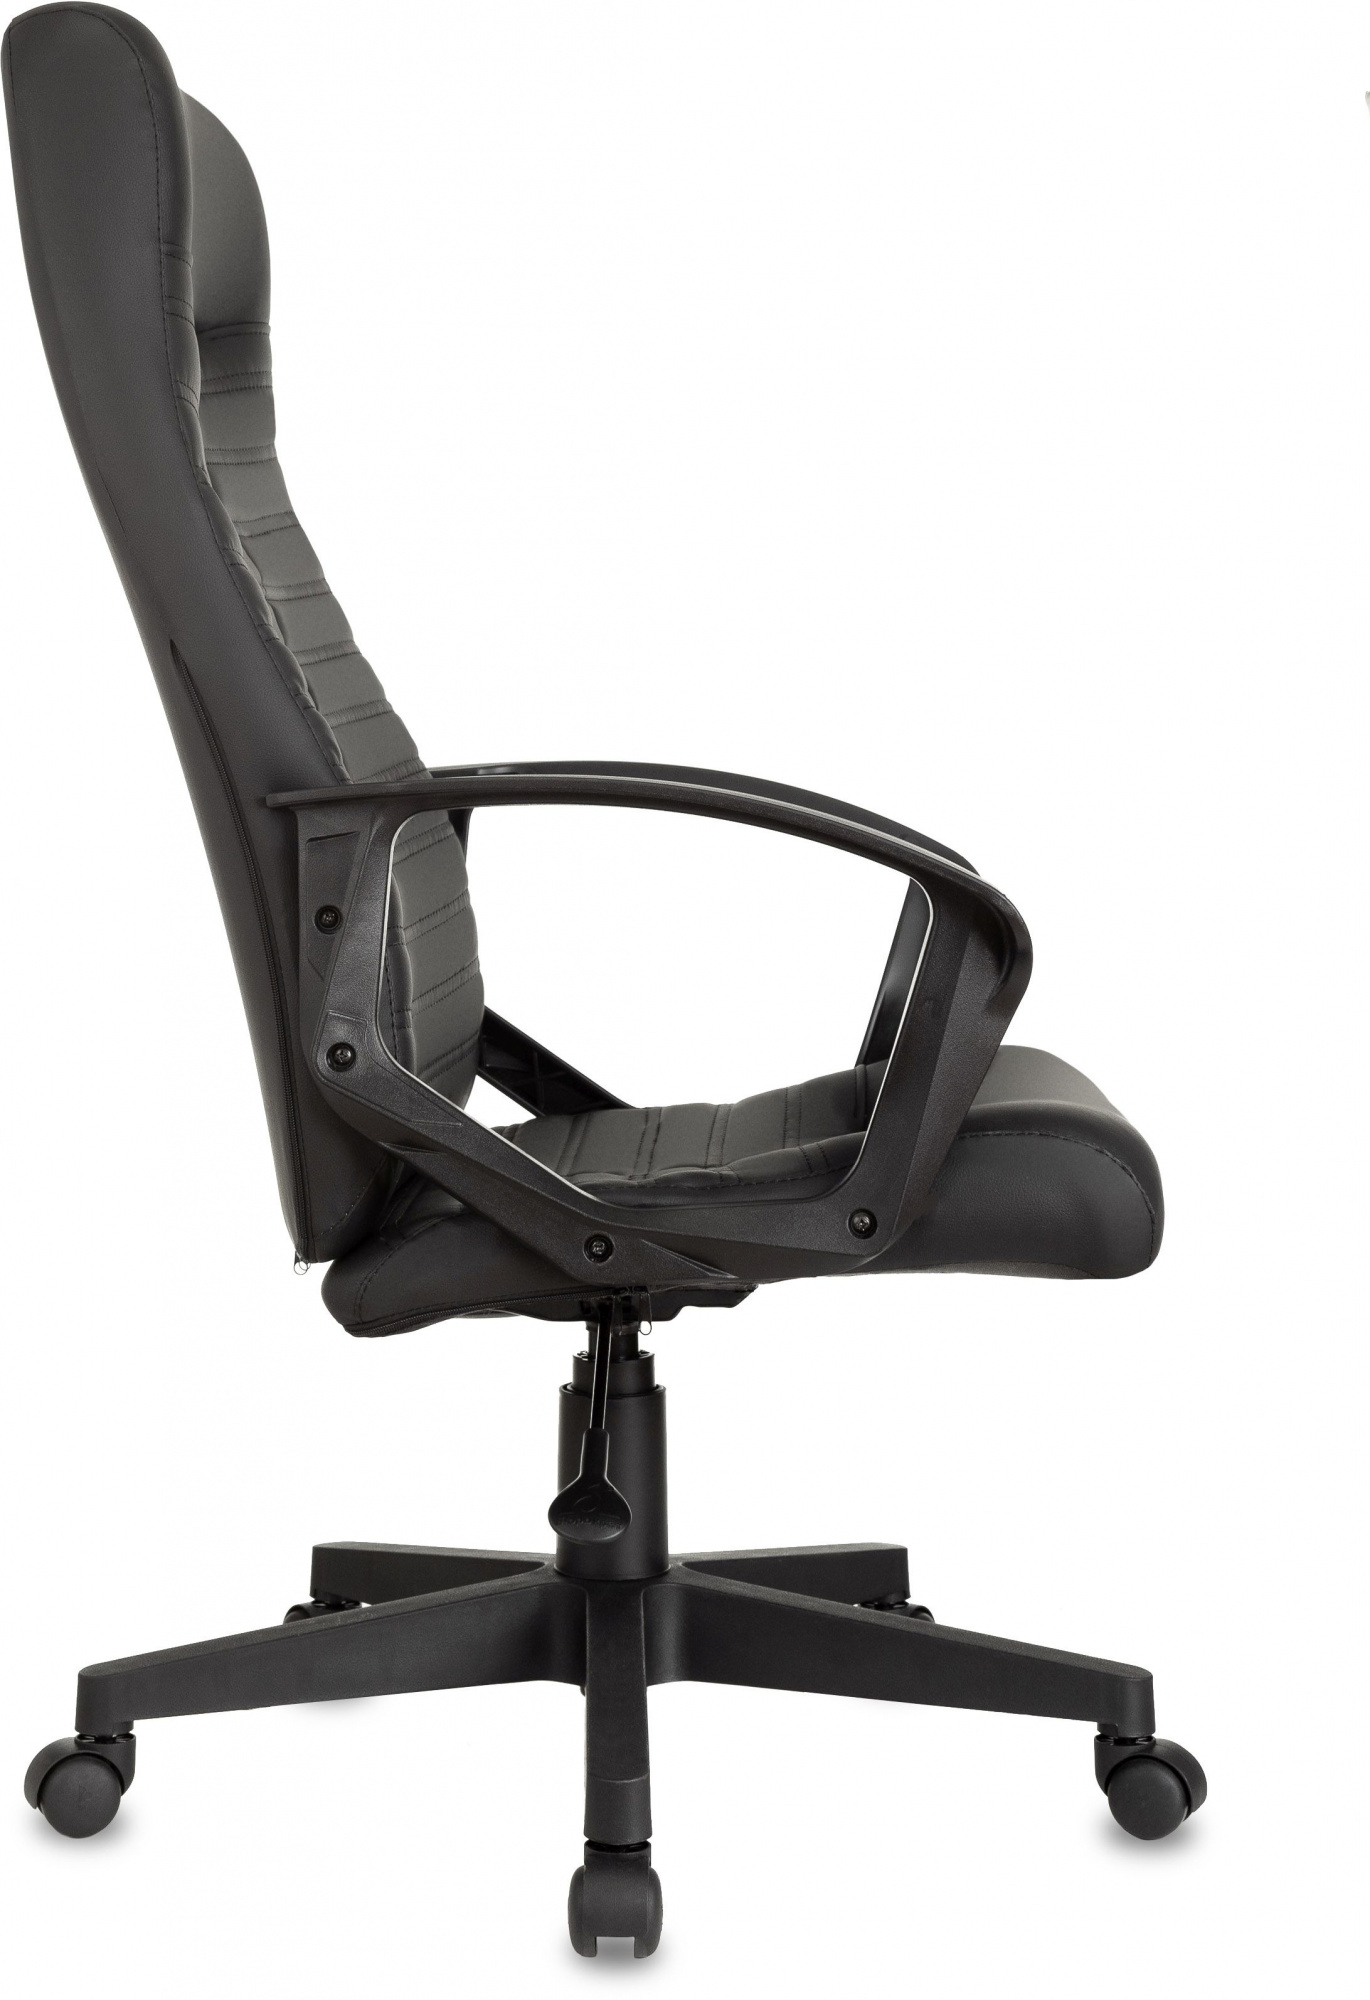 Кресло руководителя Бюрократ CH-480LT, обивка: эко.кожа, цвет: черный (CH-480LT/BLACK-PU) от магазина Buro.store